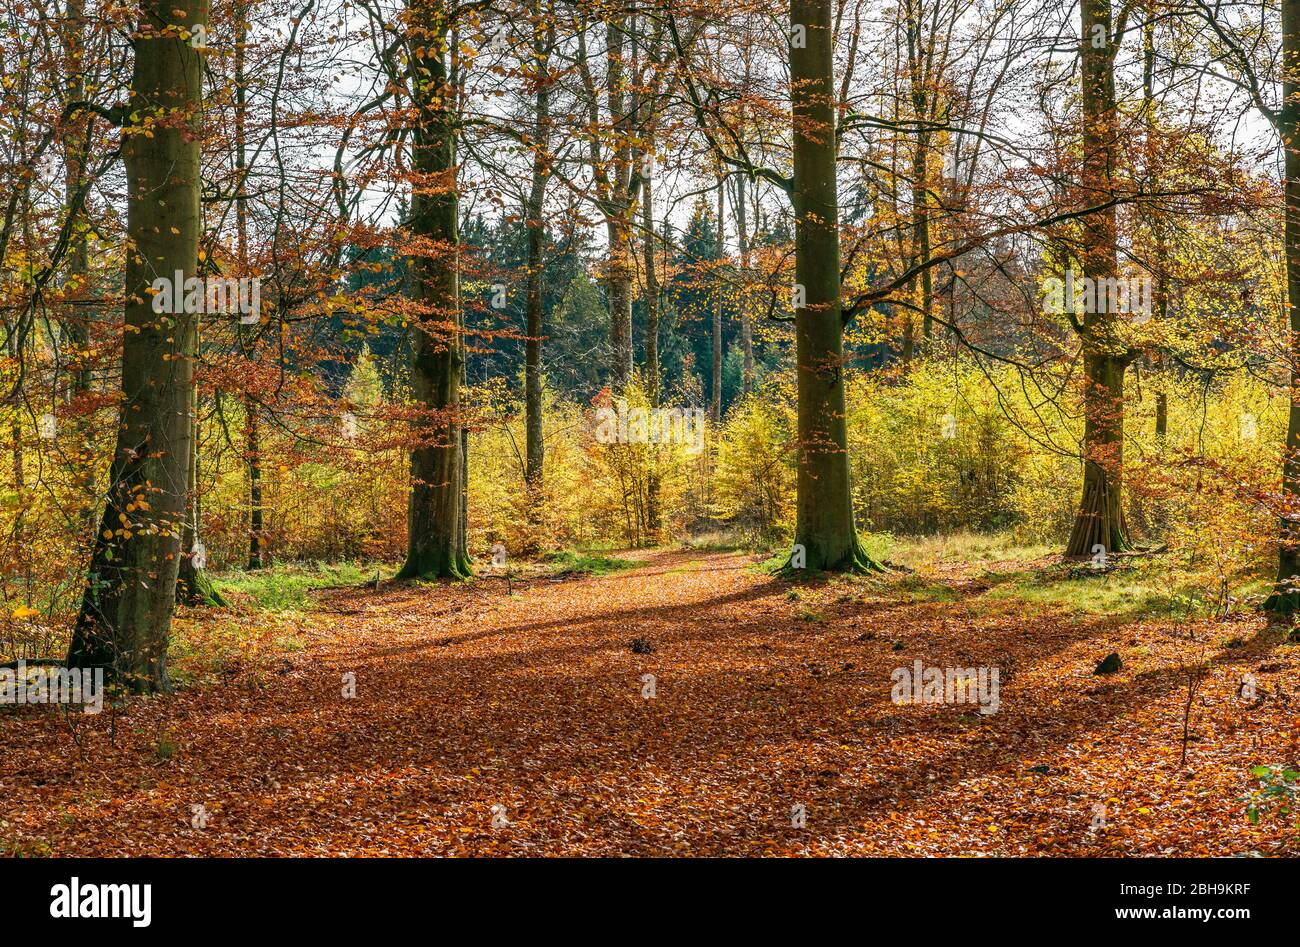 Germania, Baden-Württemberg, Sigmaringen, foresta di faggi nella foresta Josefslust, una zona di caccia della Casa di Hohenzollern. Il parco Josefslust è aperto al pubblico come area ricreativa. Foto Stock